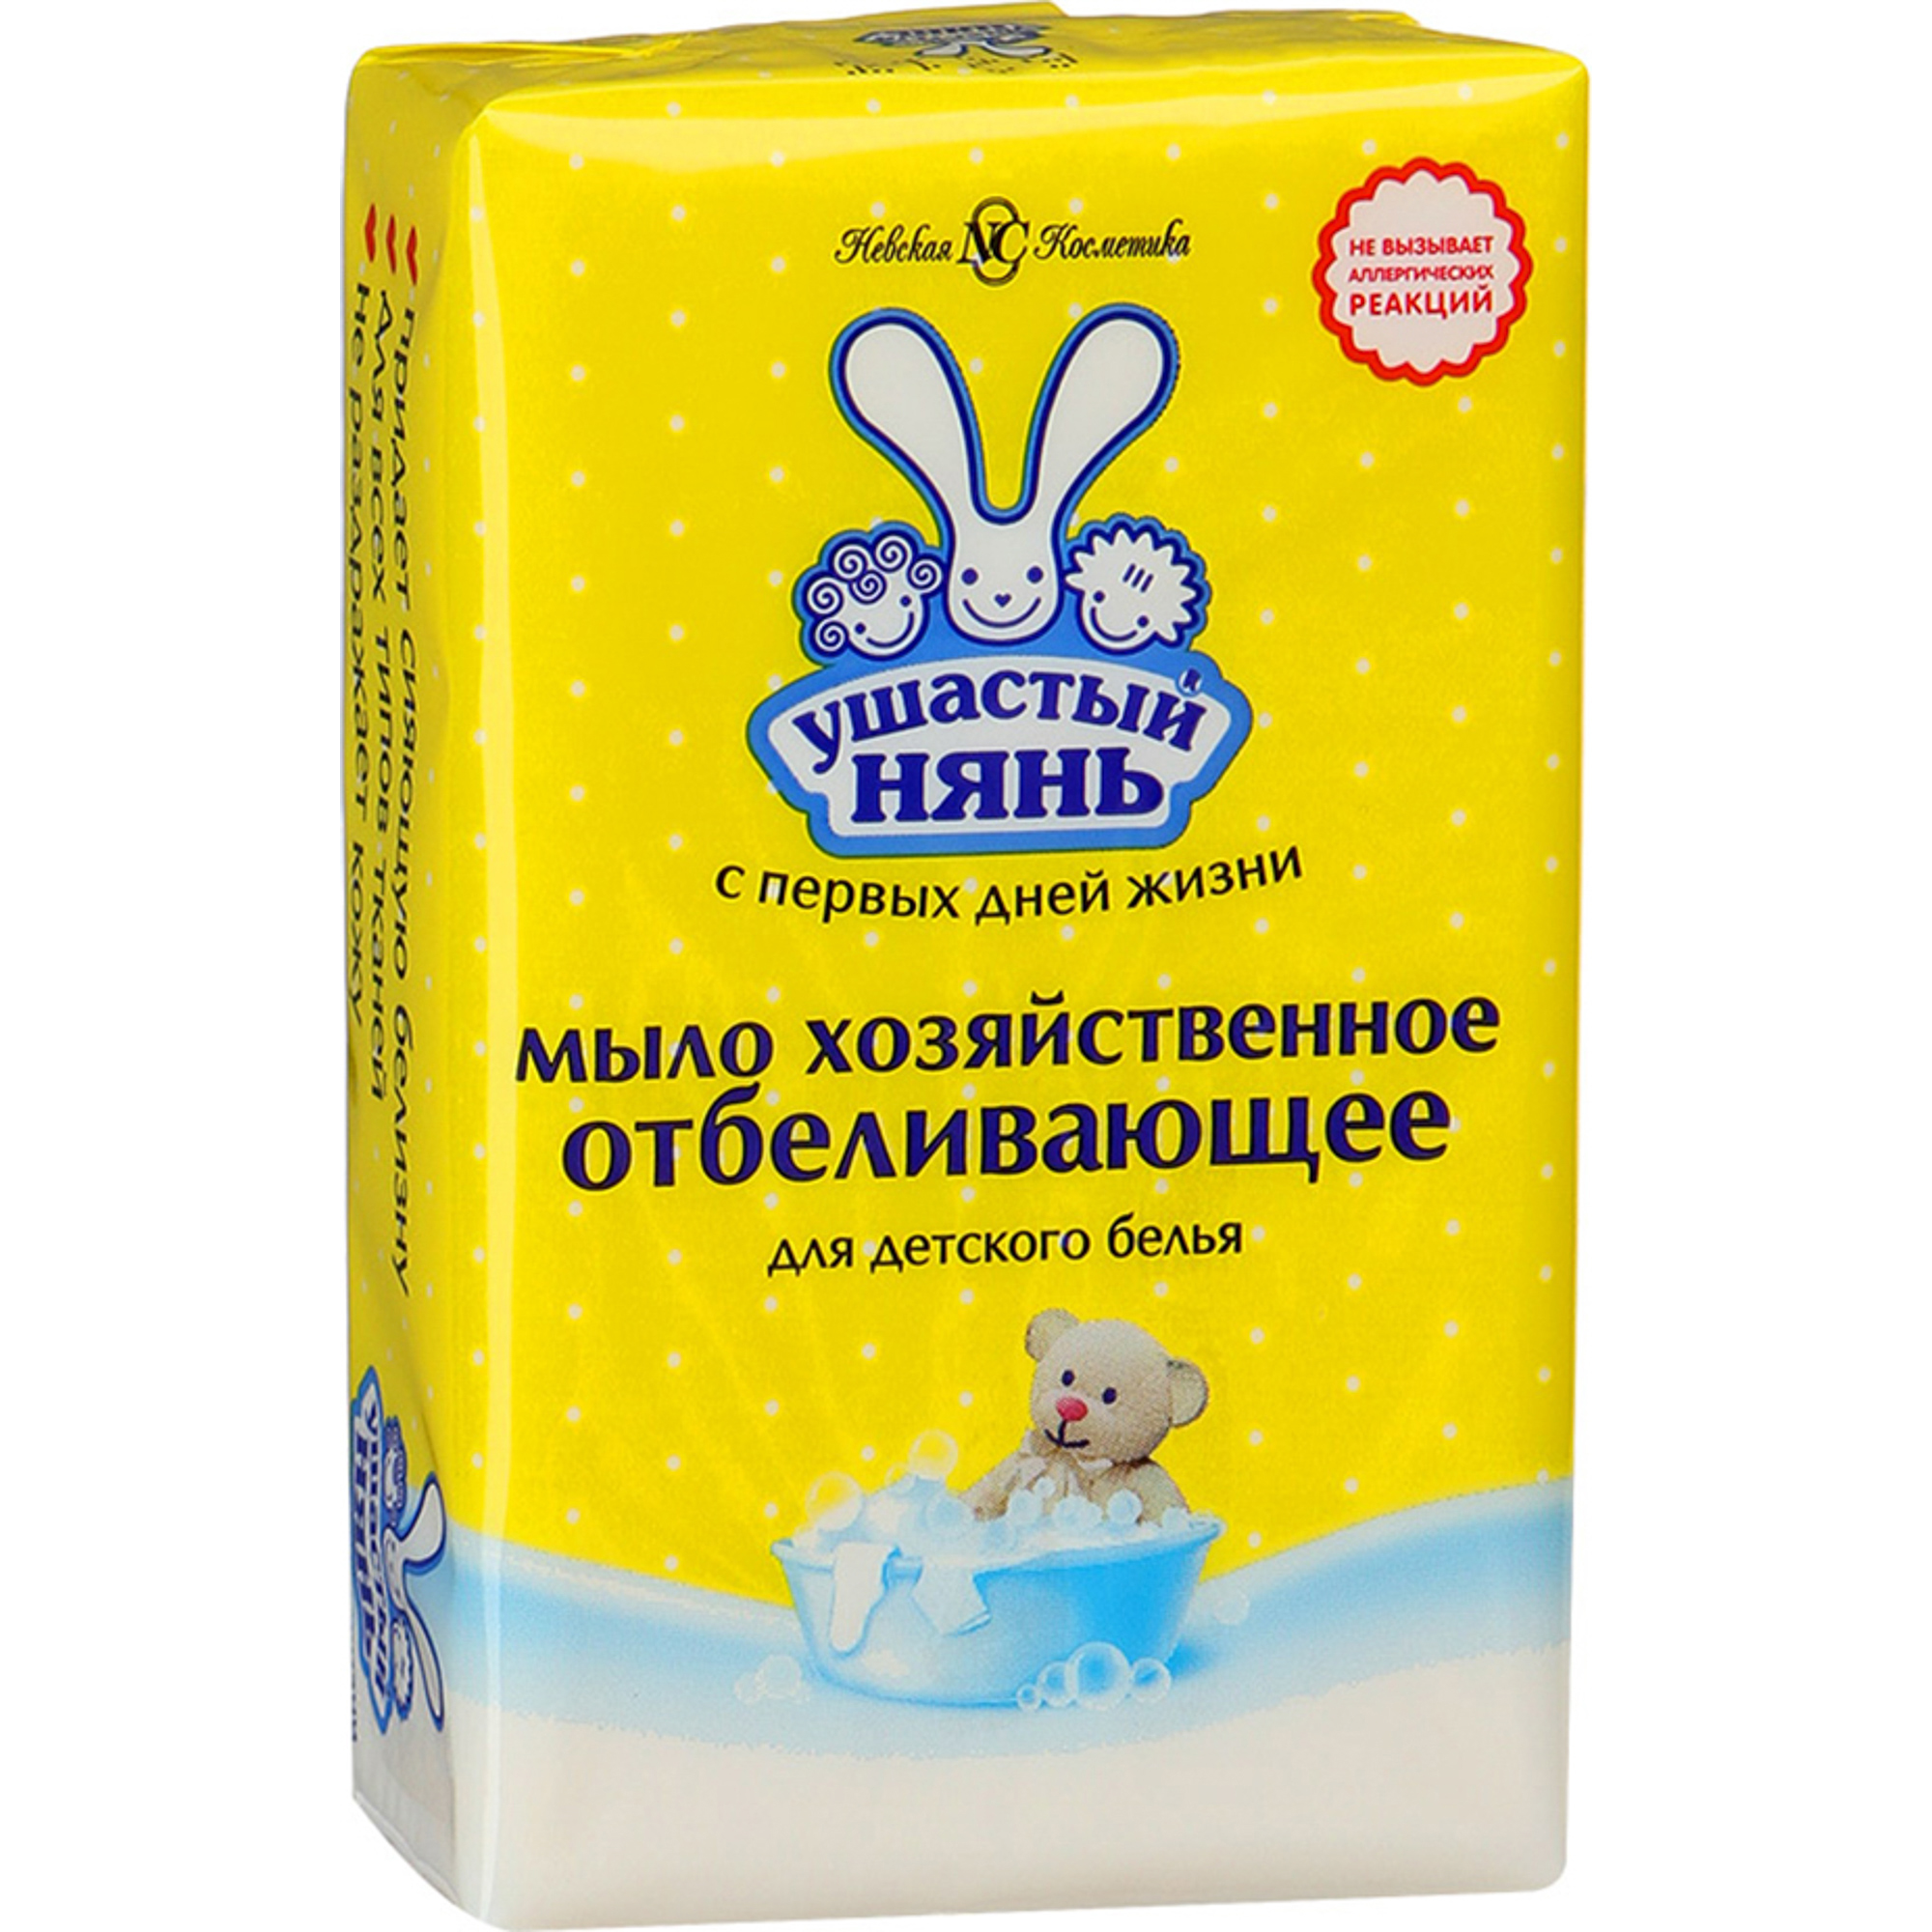 Хозяйственное мыло Ушастый нянь Отбеливающее 180 г мыло хозяйственное для детского белья отбеливающее ушастый нянь 180 г